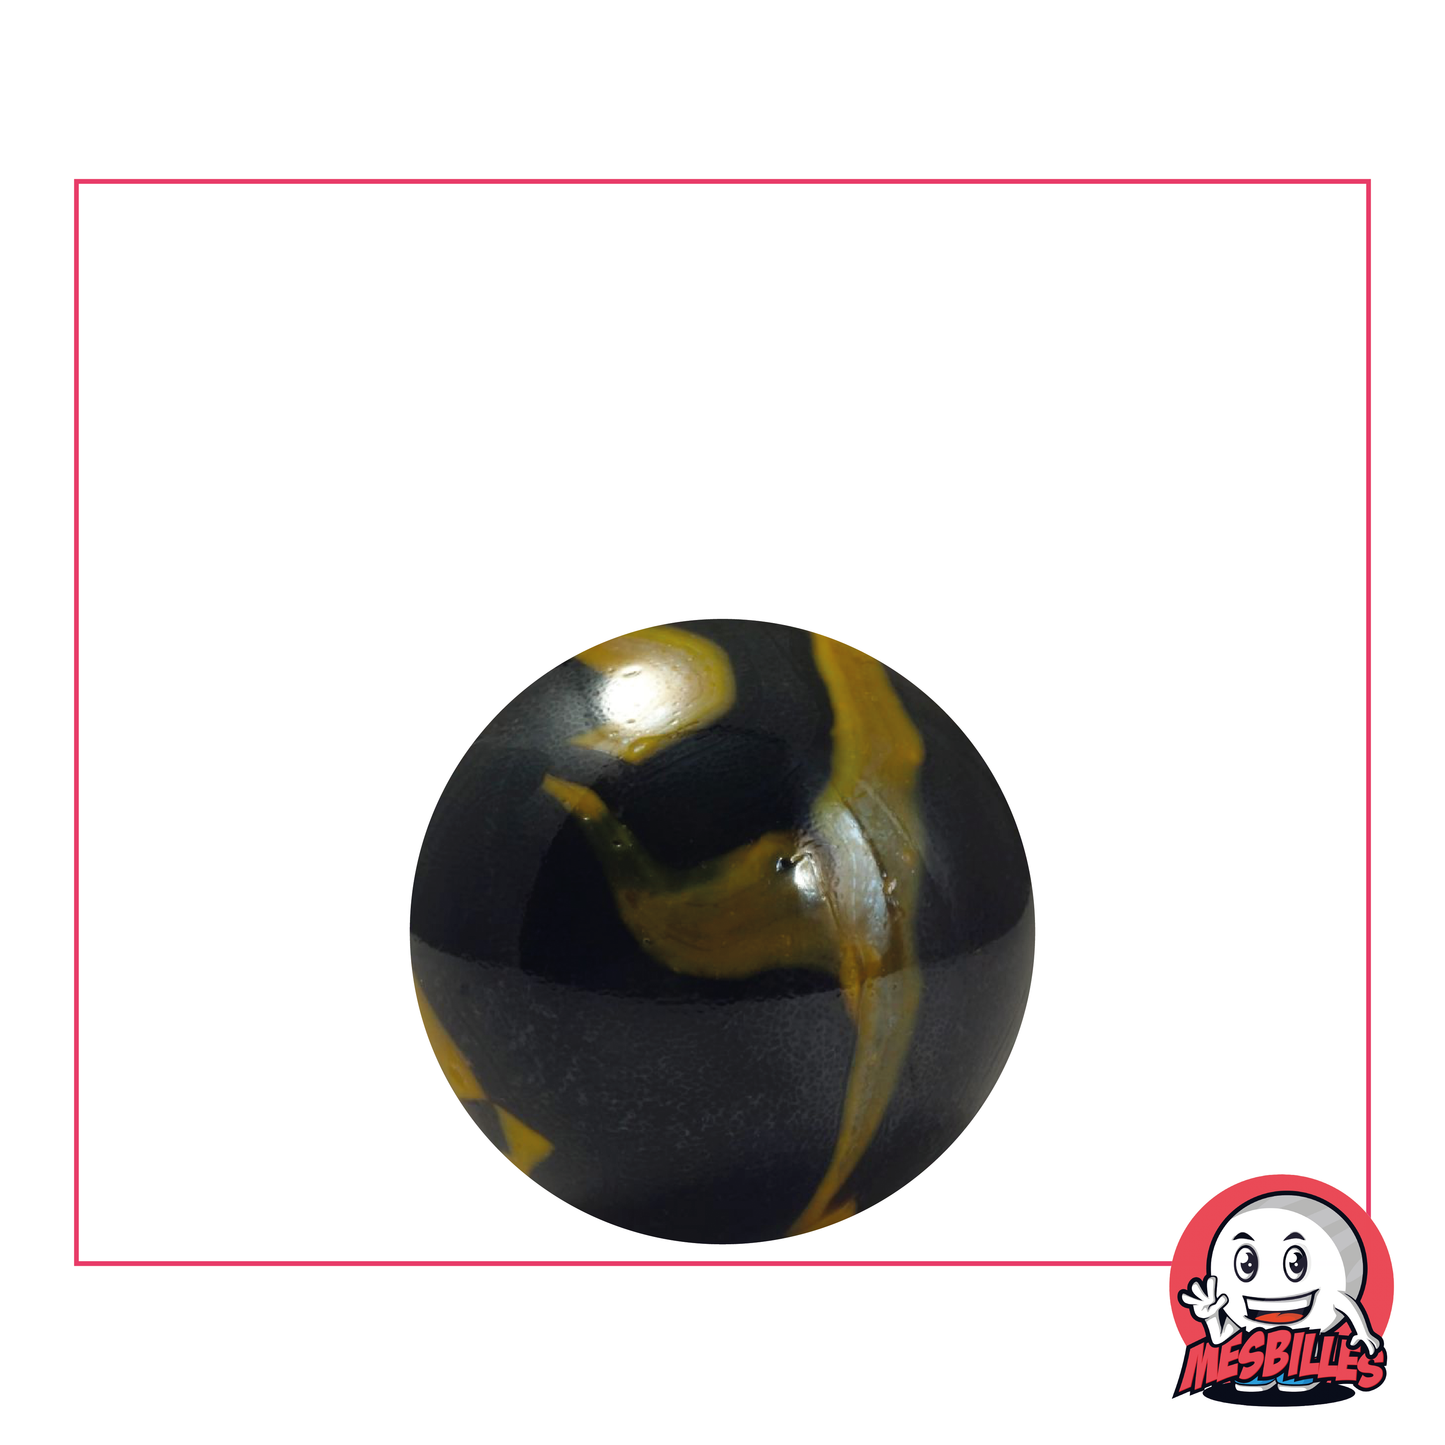 Bille Souterraine 22 mm - Aspect porcelaine noir brillant et touches jaune, pour un style mystérieux